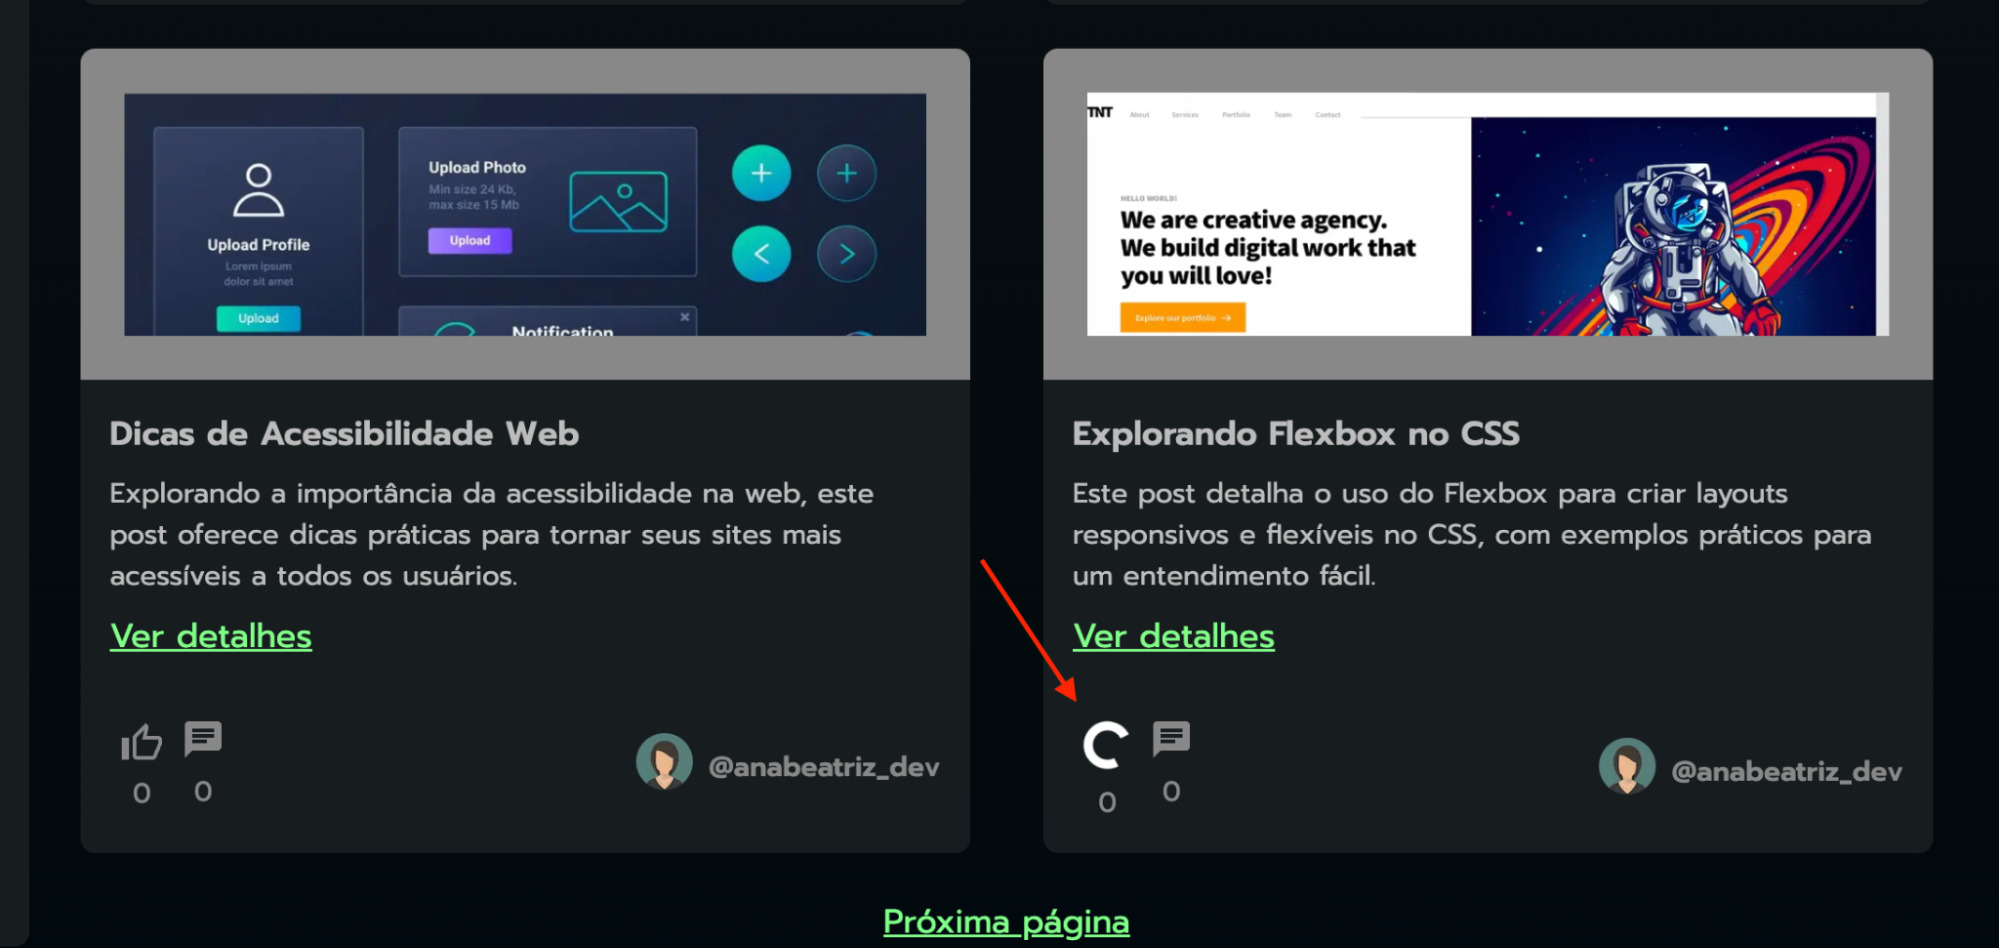 Página do blog com seta indicando o botão de carrregamento do post “Explorando Flexbox no CSS”.